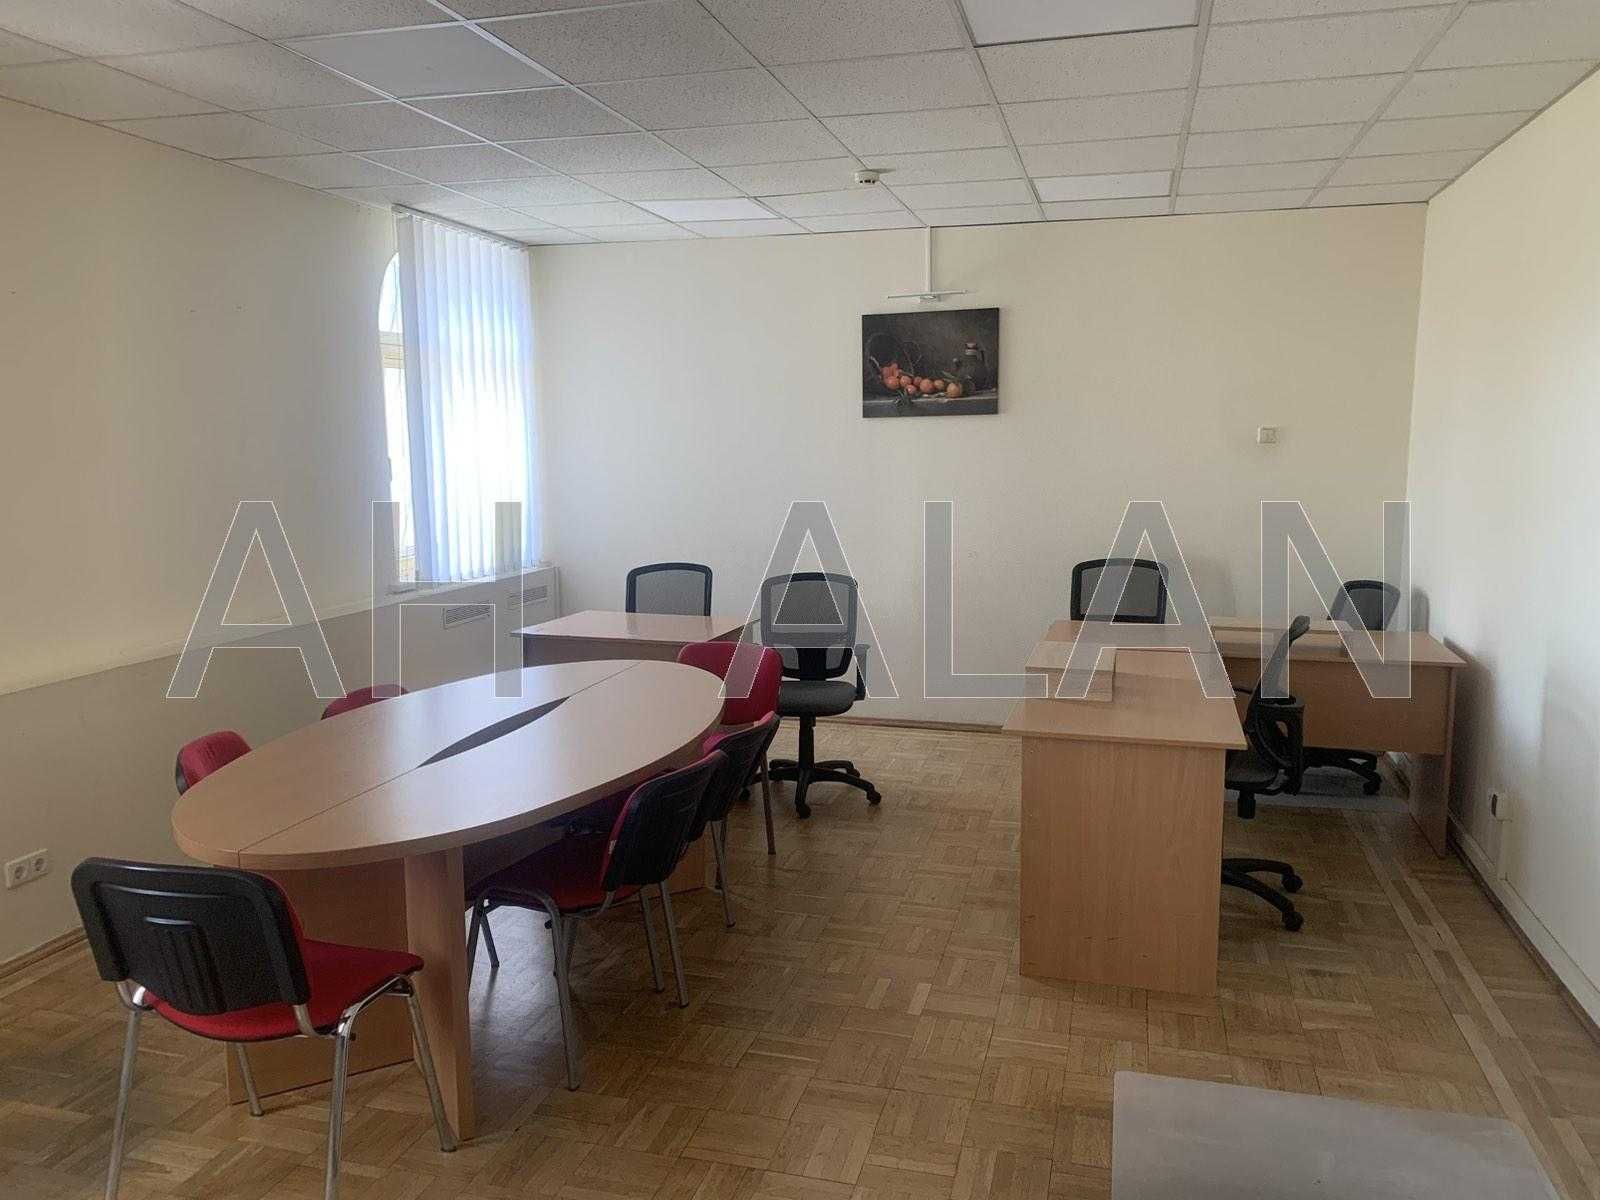 Аренда офиса 430 м2 в центре Шевсченковском районе по улице Стрелецкая